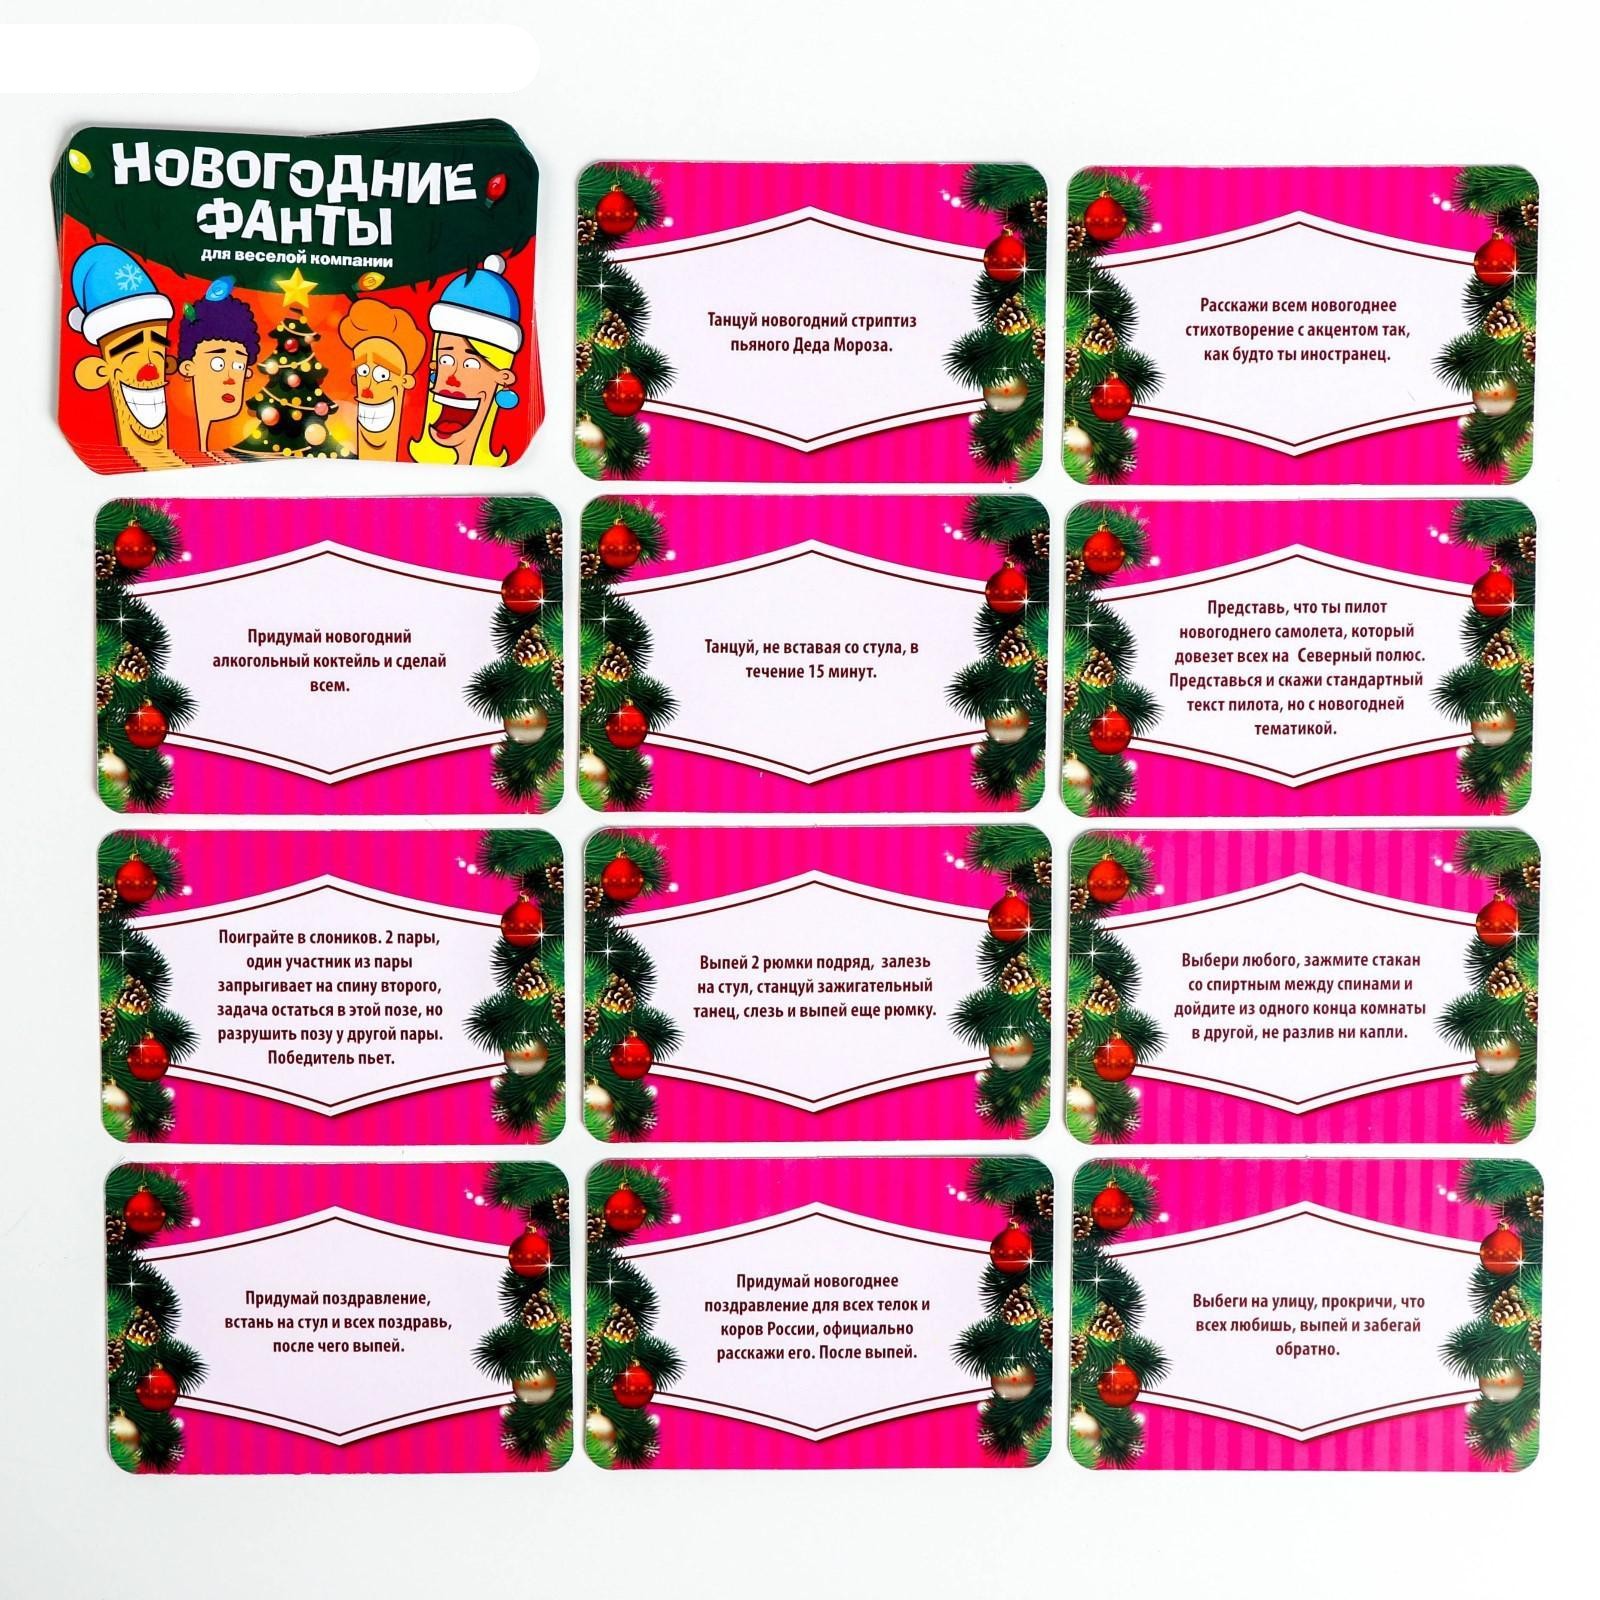 Серпантин идей - застольная игра-карточки для тесной компании "так о хобби я скажу" // веселая застольная игра с карточками для развлечения и сплочения компании